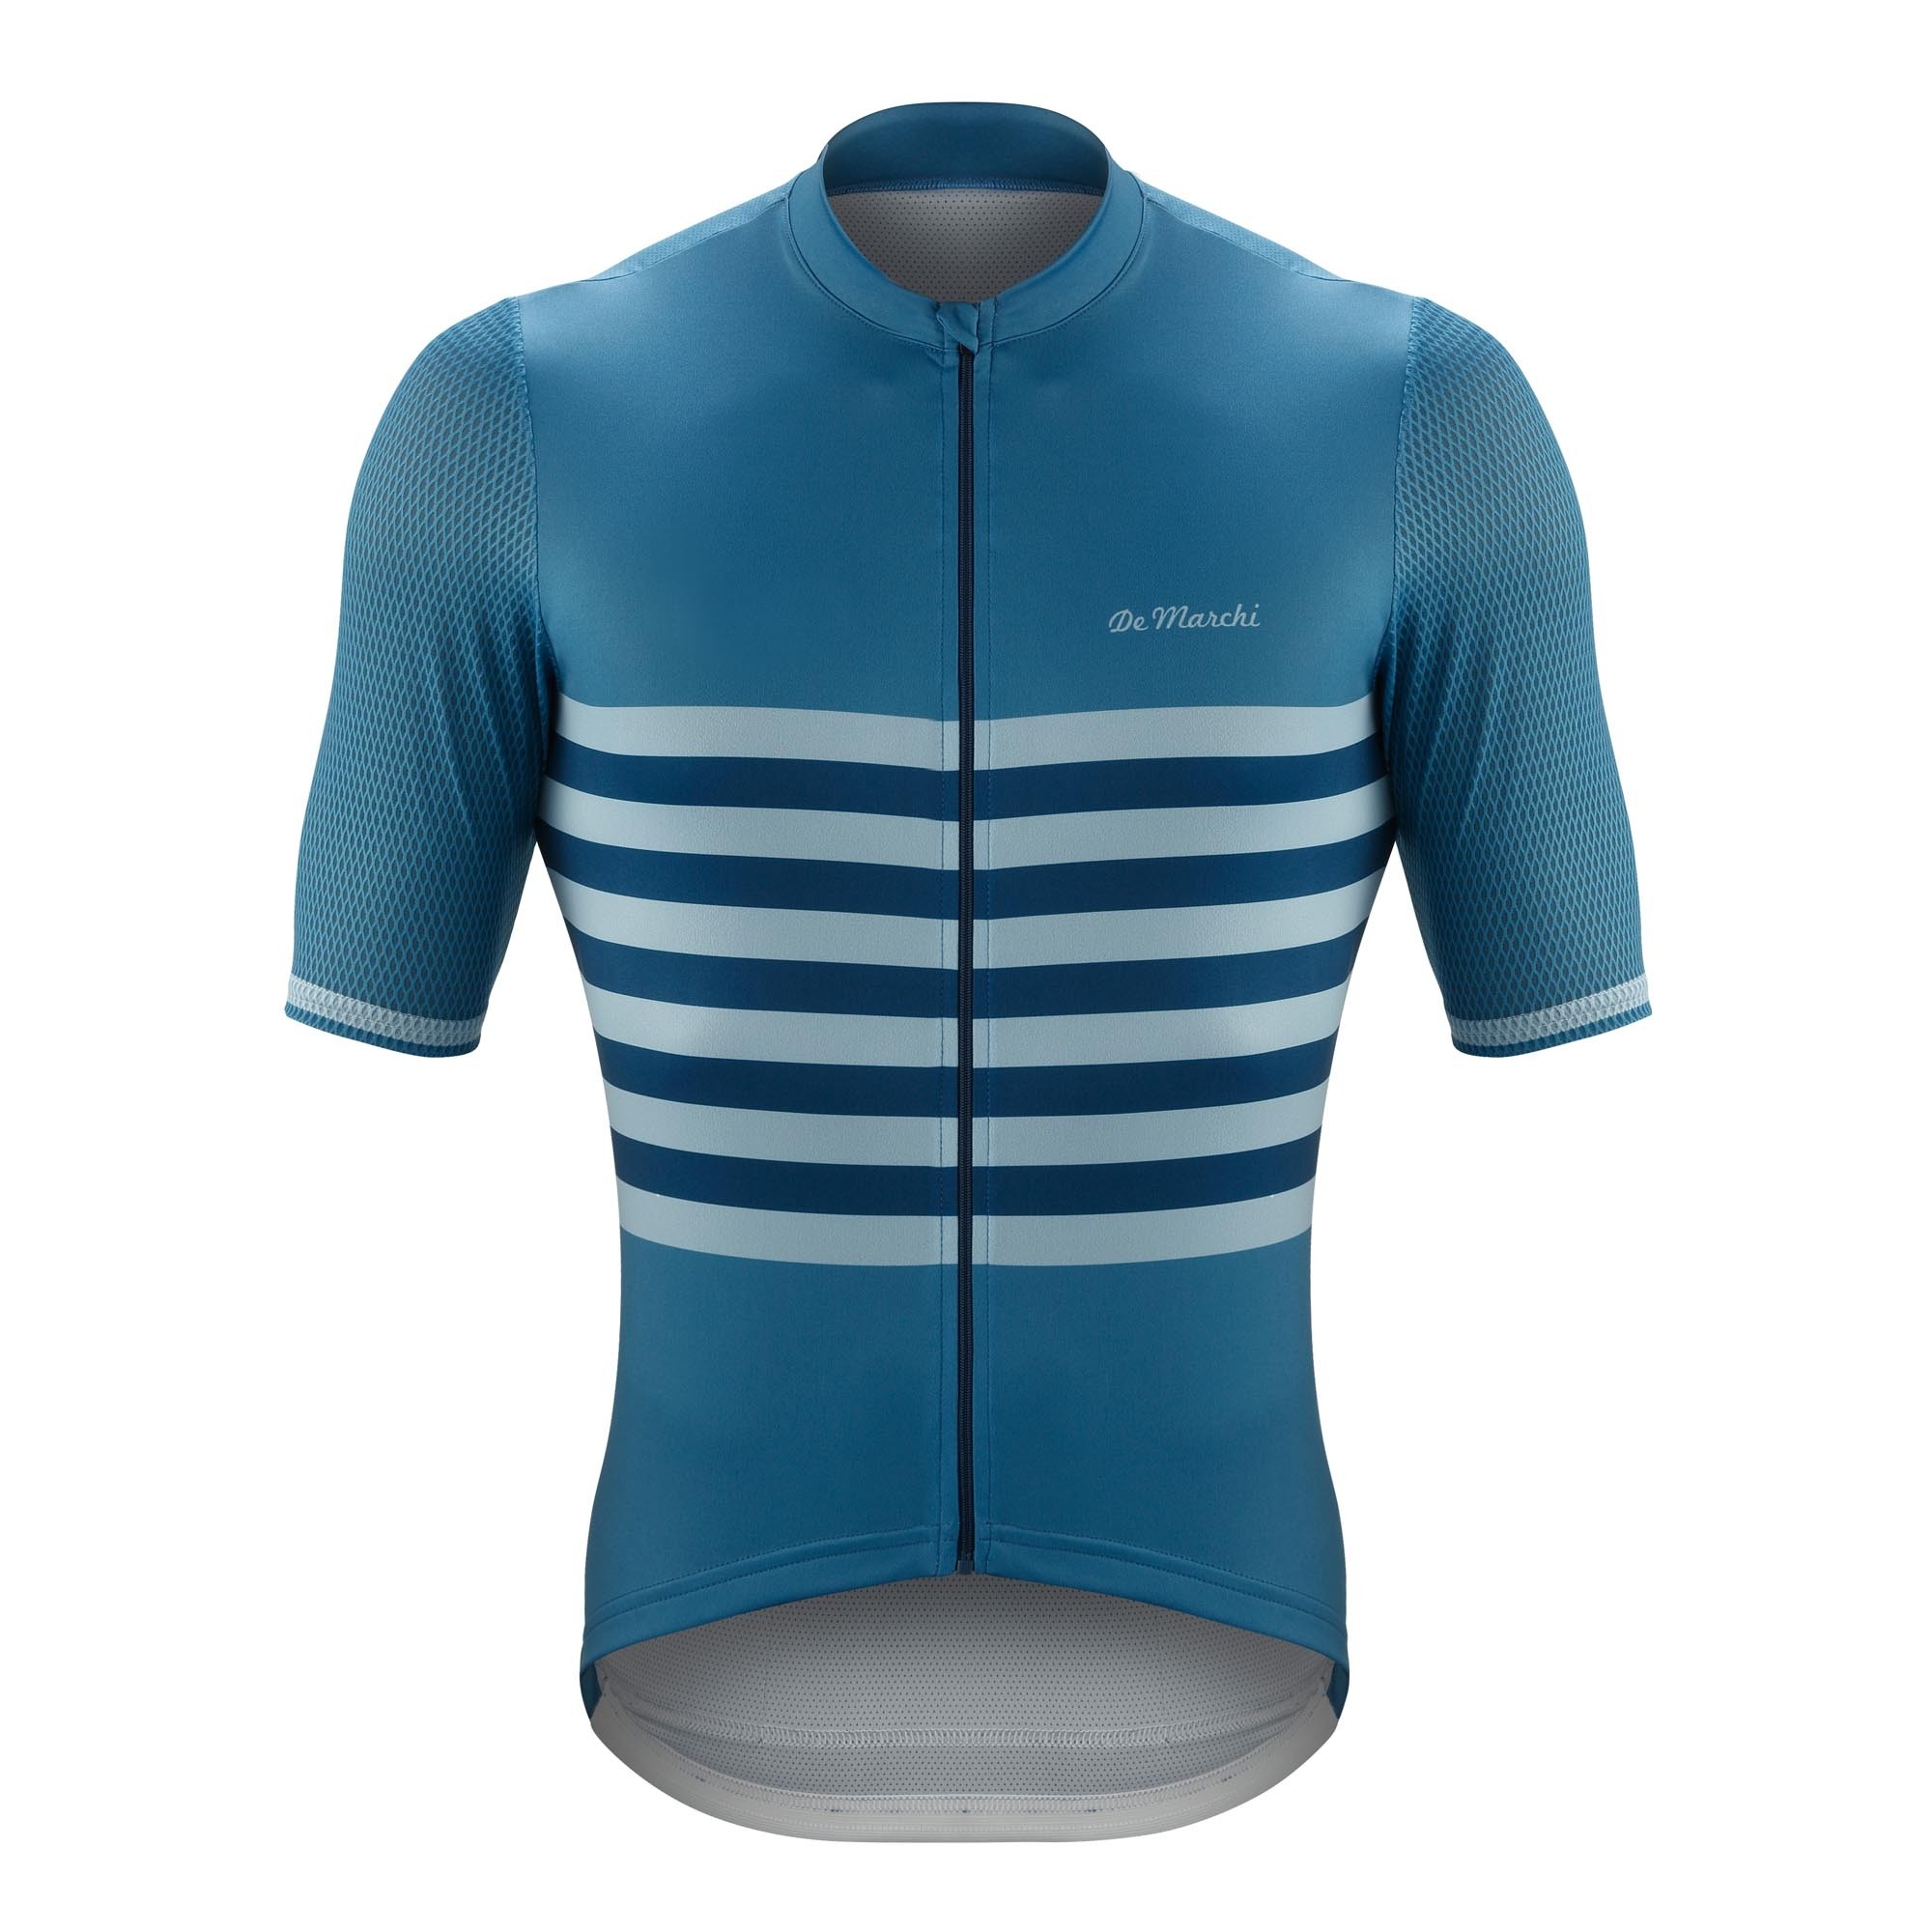 De Marchi veloce fietsshirt met korte mouwen savoy blauw